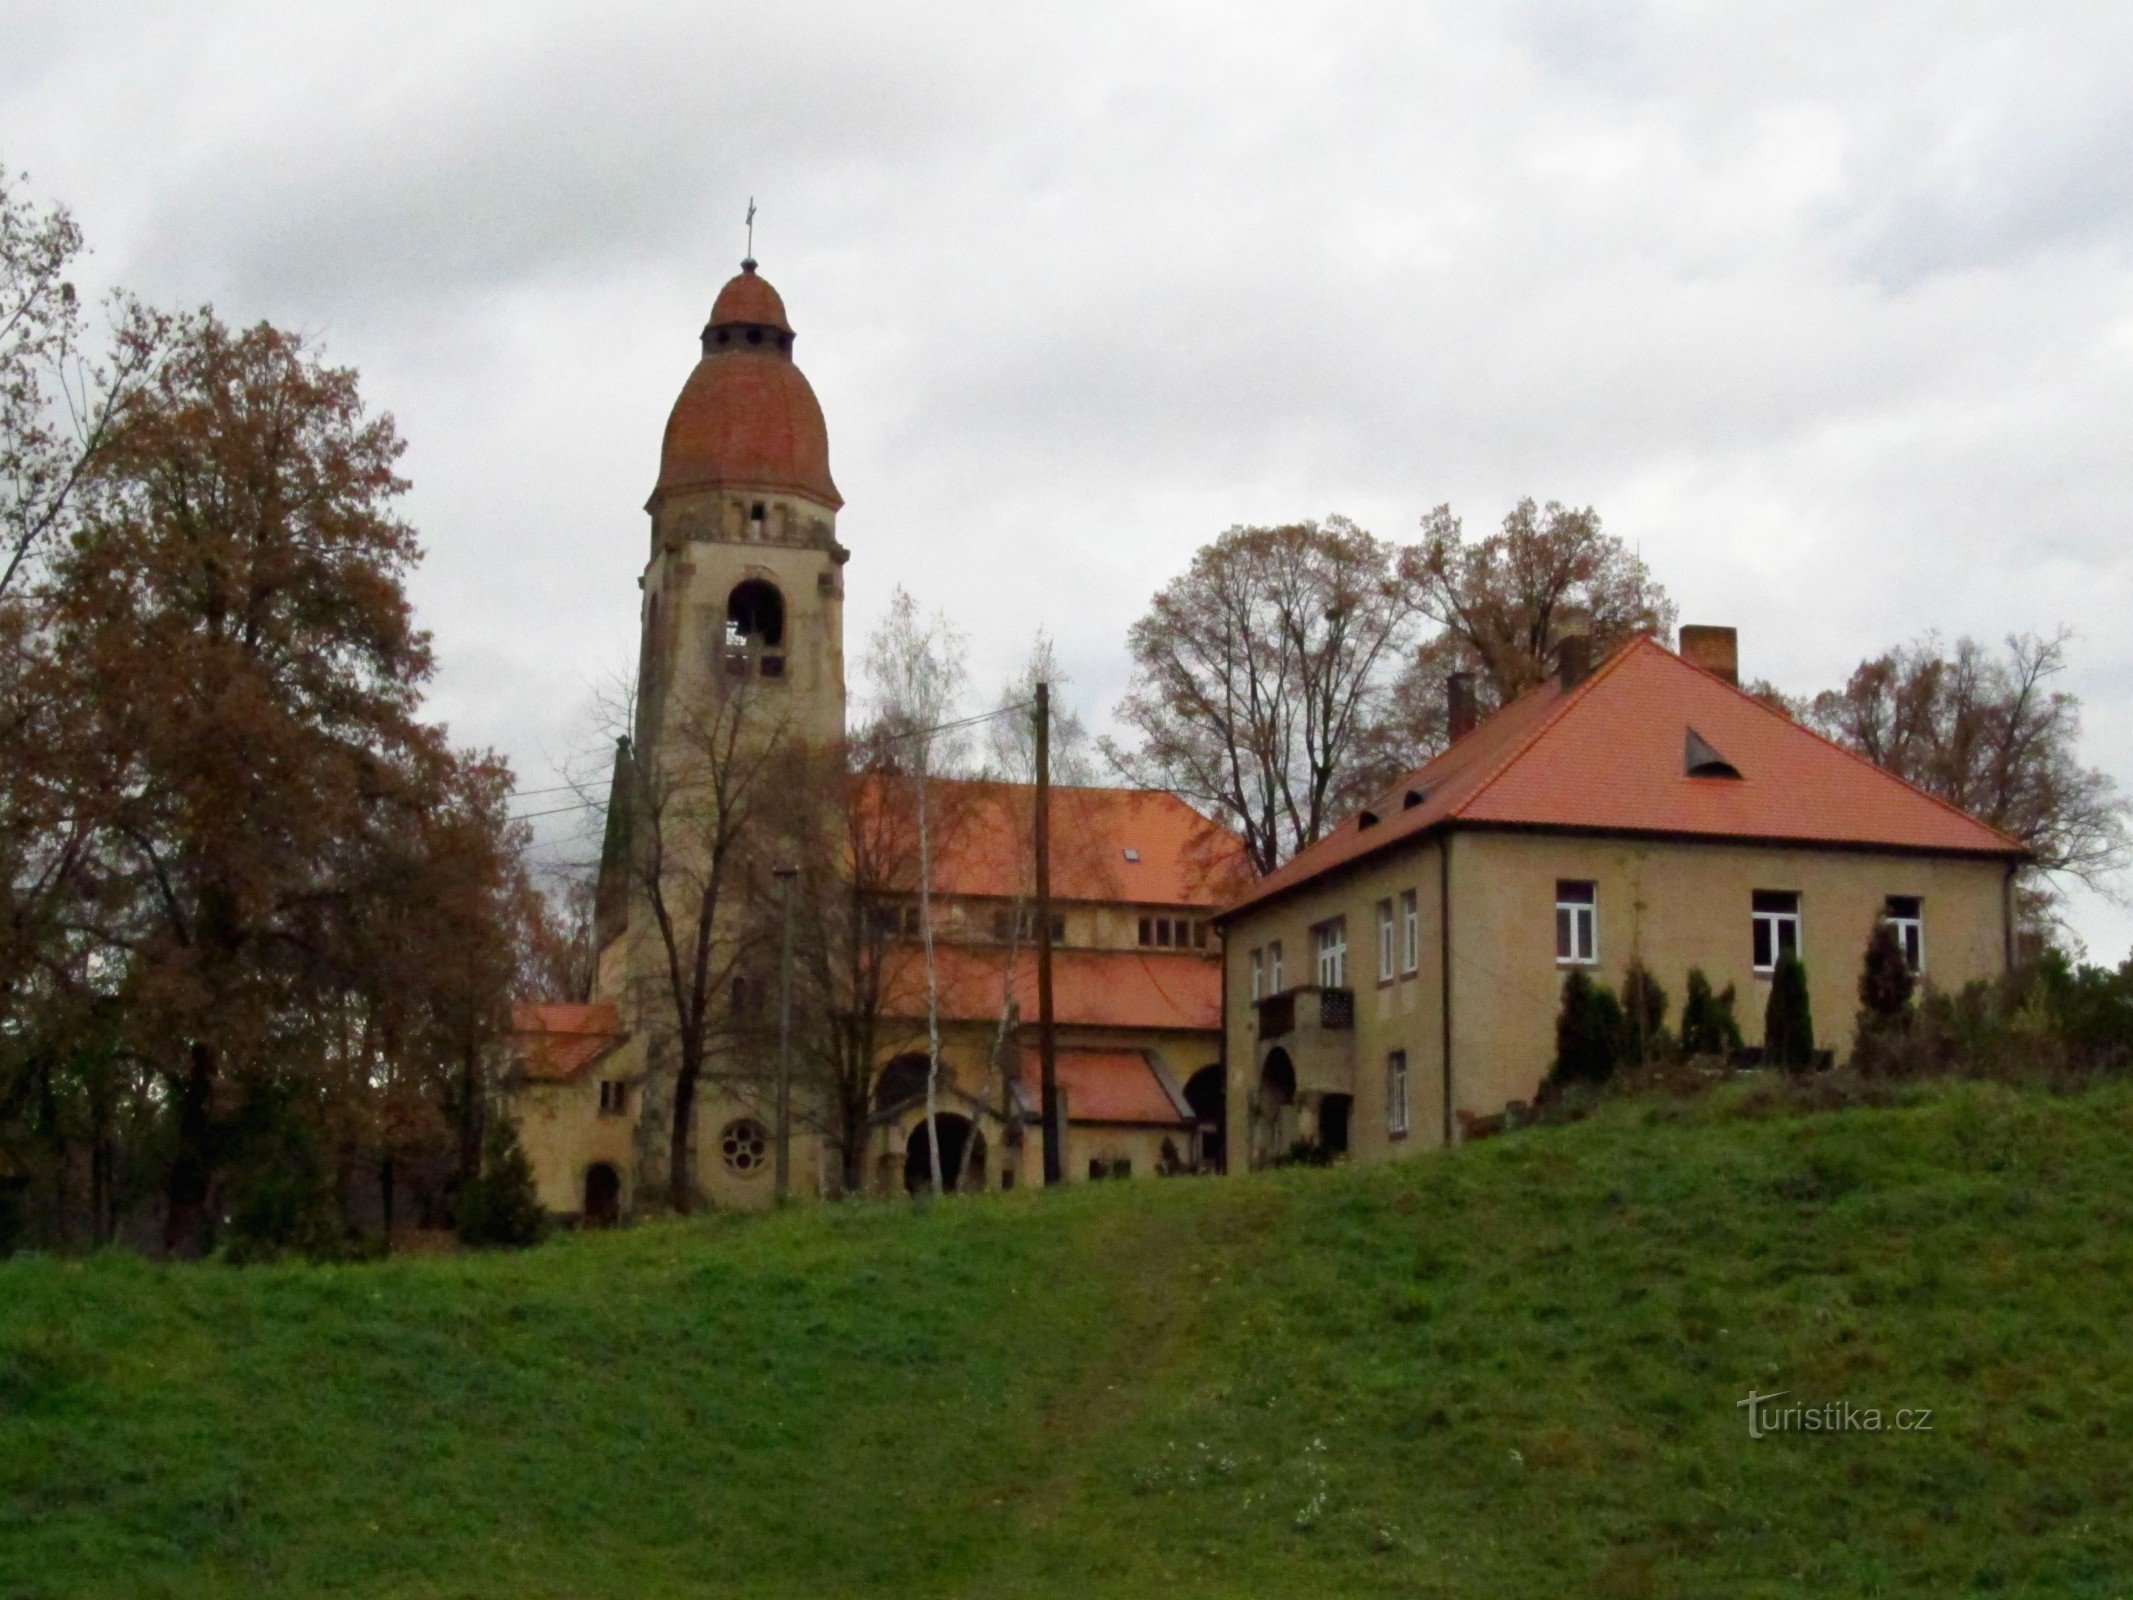 01 Štěchovice, l'église Saint-Jean Népomuck et le presbytère